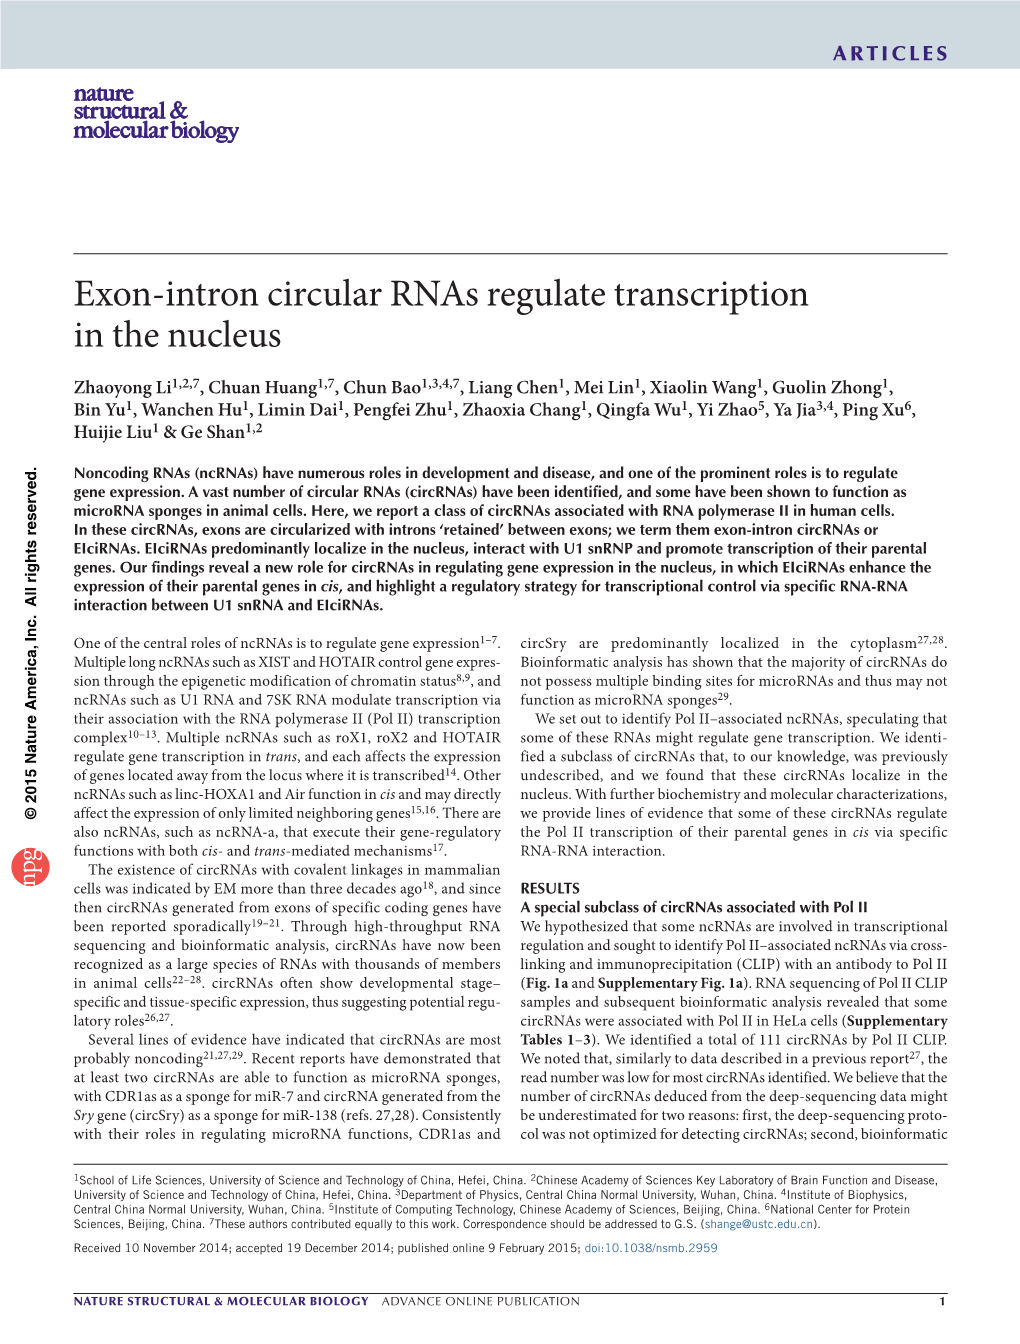 Exon-Intron Circular Rnas Regulate Transcription in the Nucleus